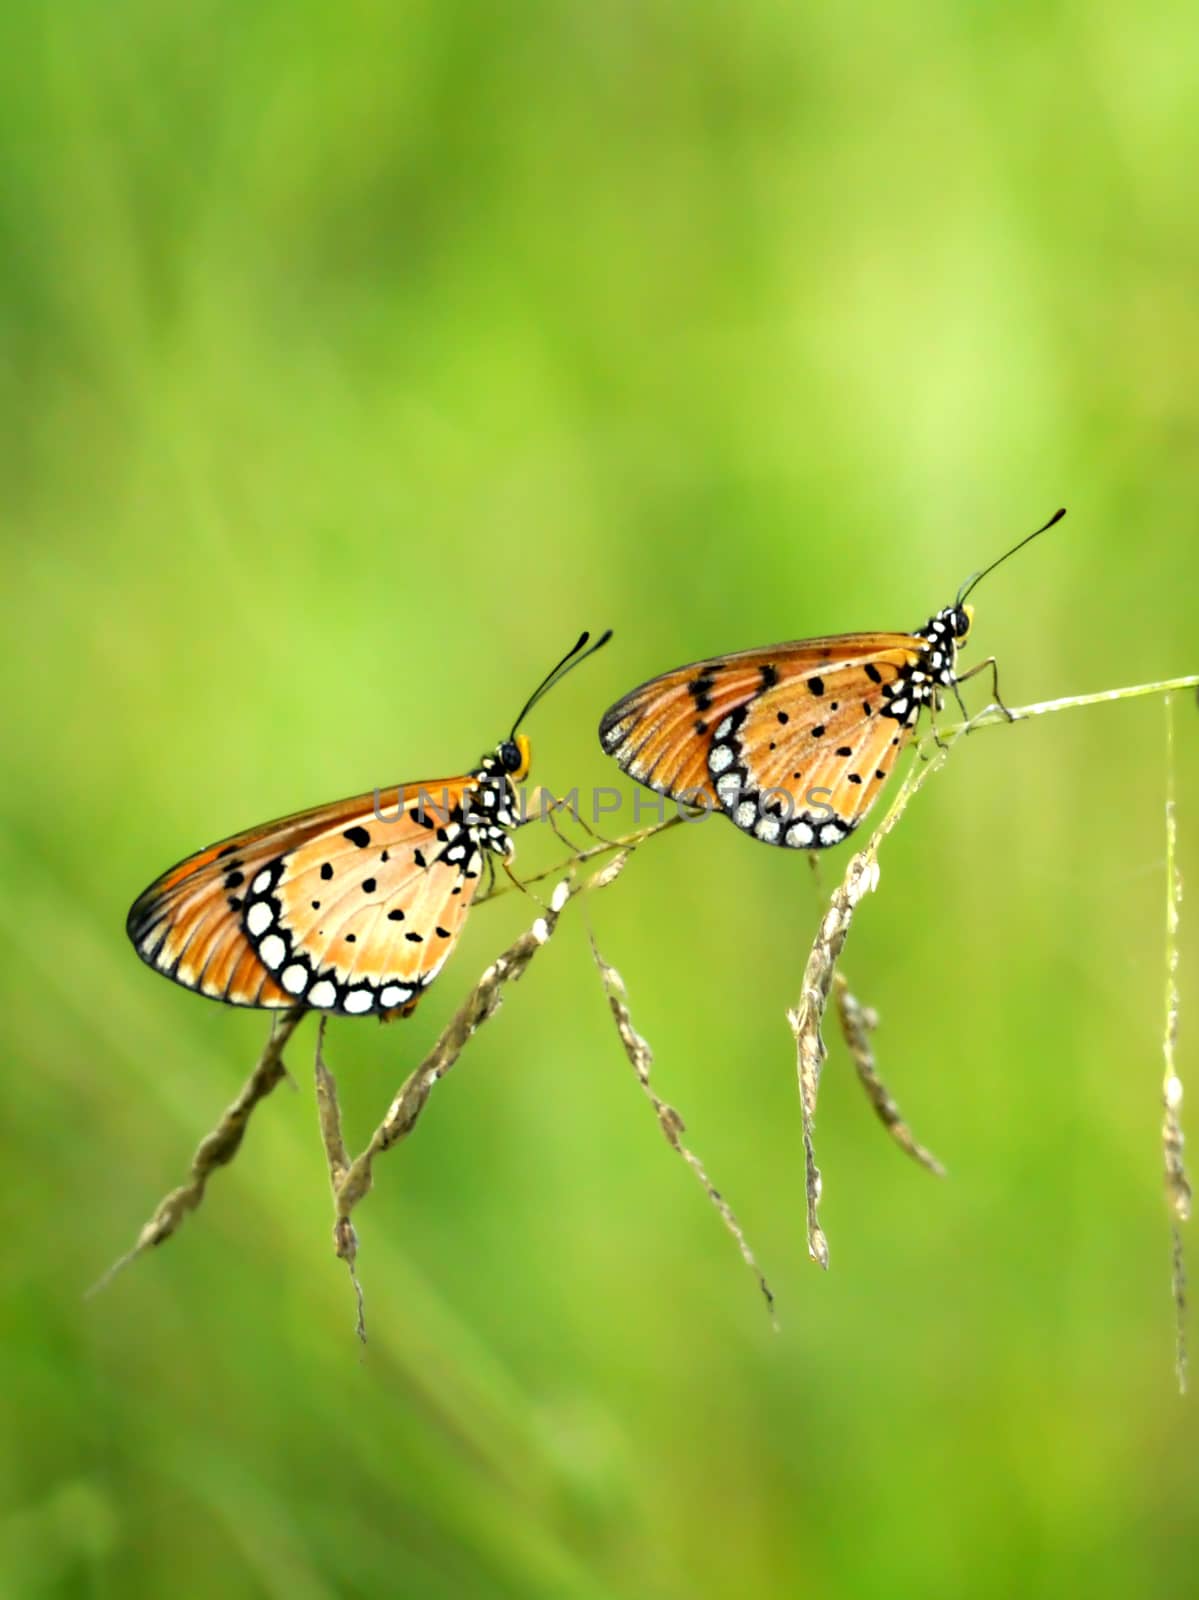 Two butterflies on grass.